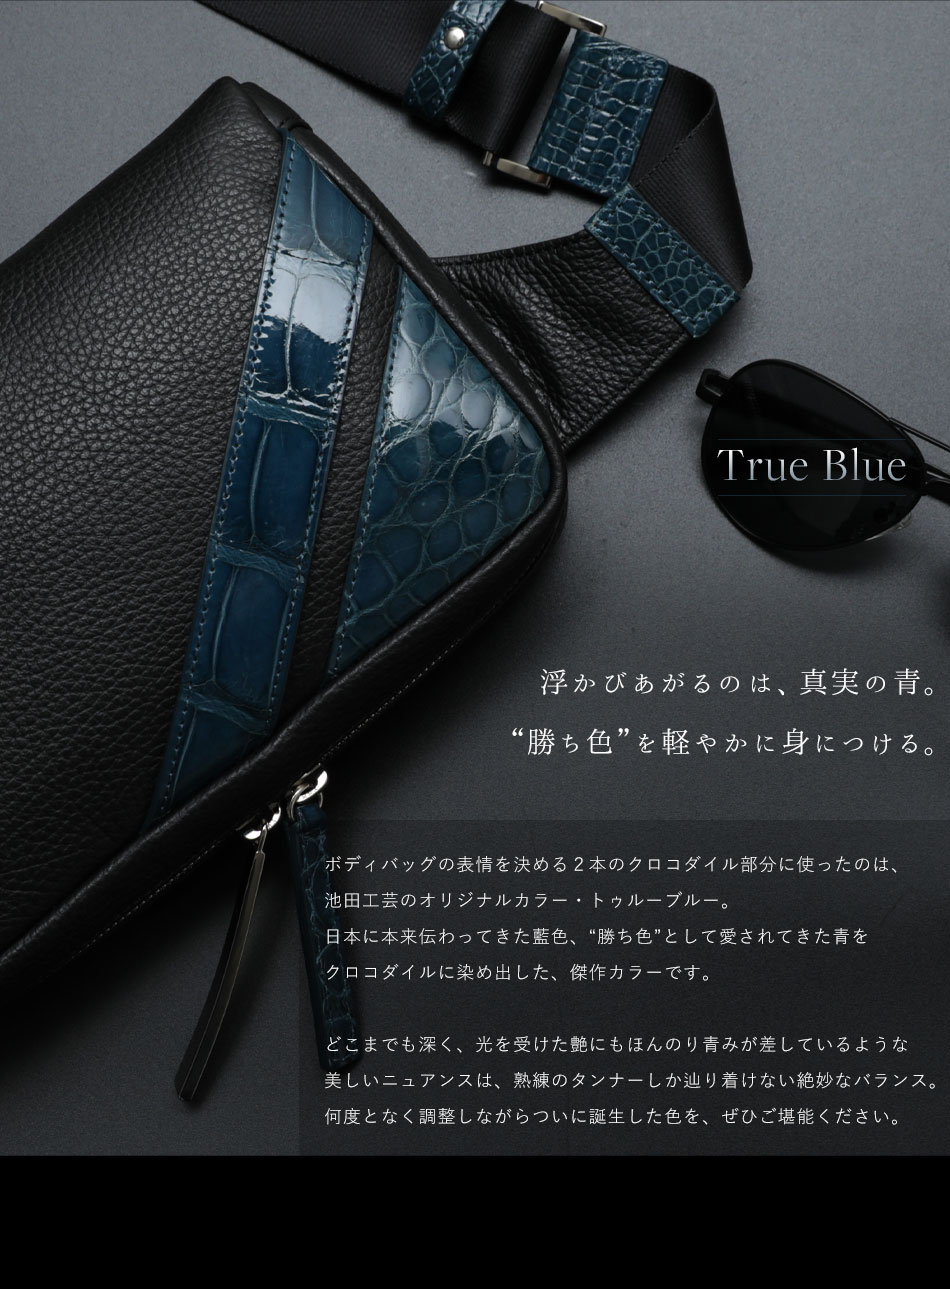 池田工芸】日本最大のクロコダイル専門店が贈るCrocodile Body Bag